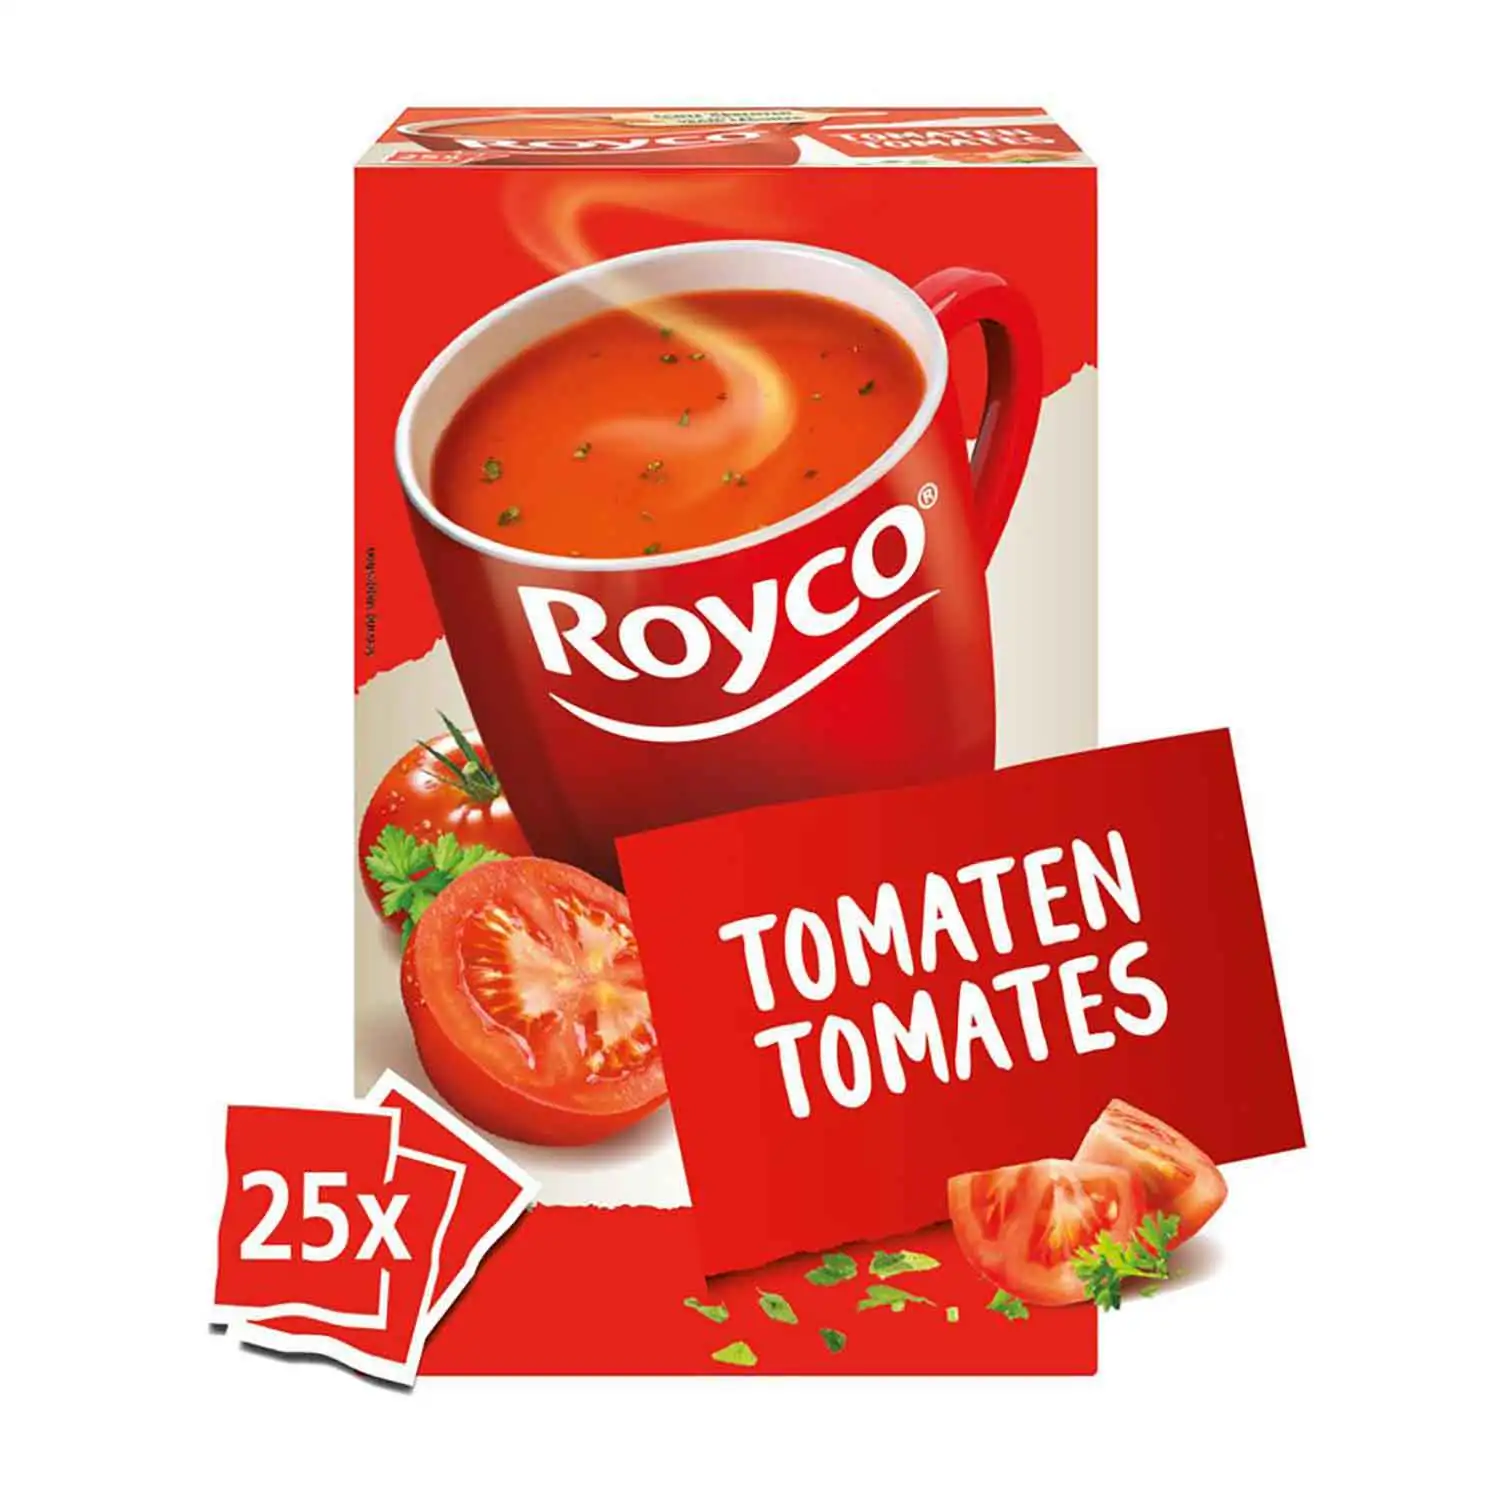 25x Royco classic tomatoes 17g